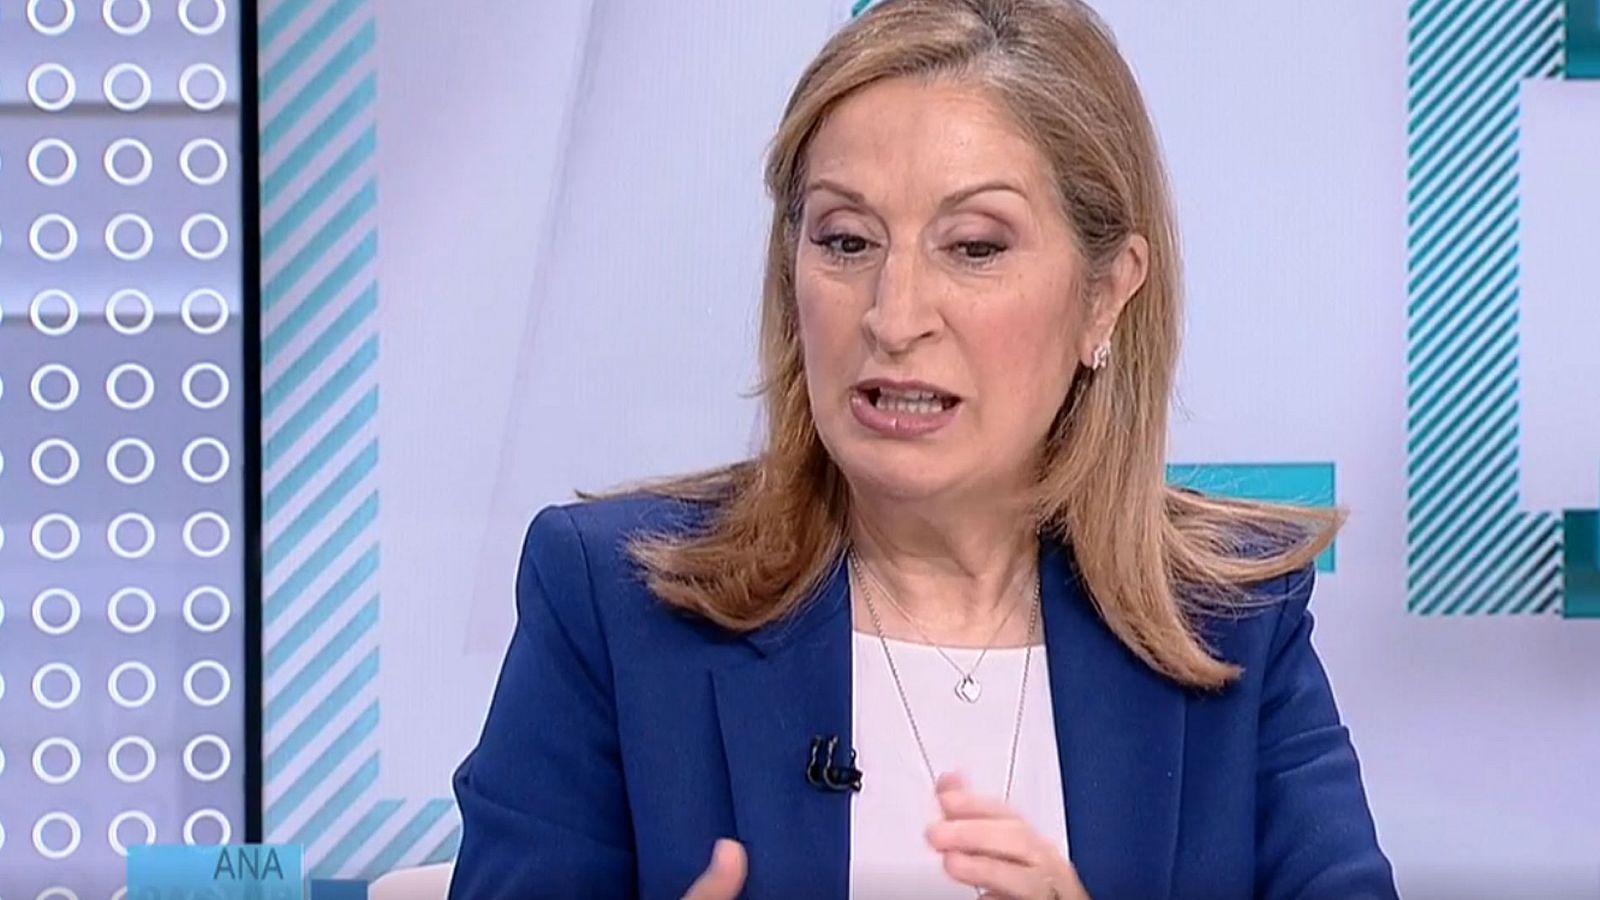 Elecciones Generales del 10N: Ana Pastor asegura que es "una vergüenza" que Sánchez no haya llamado ya a Casado - RTVE.es